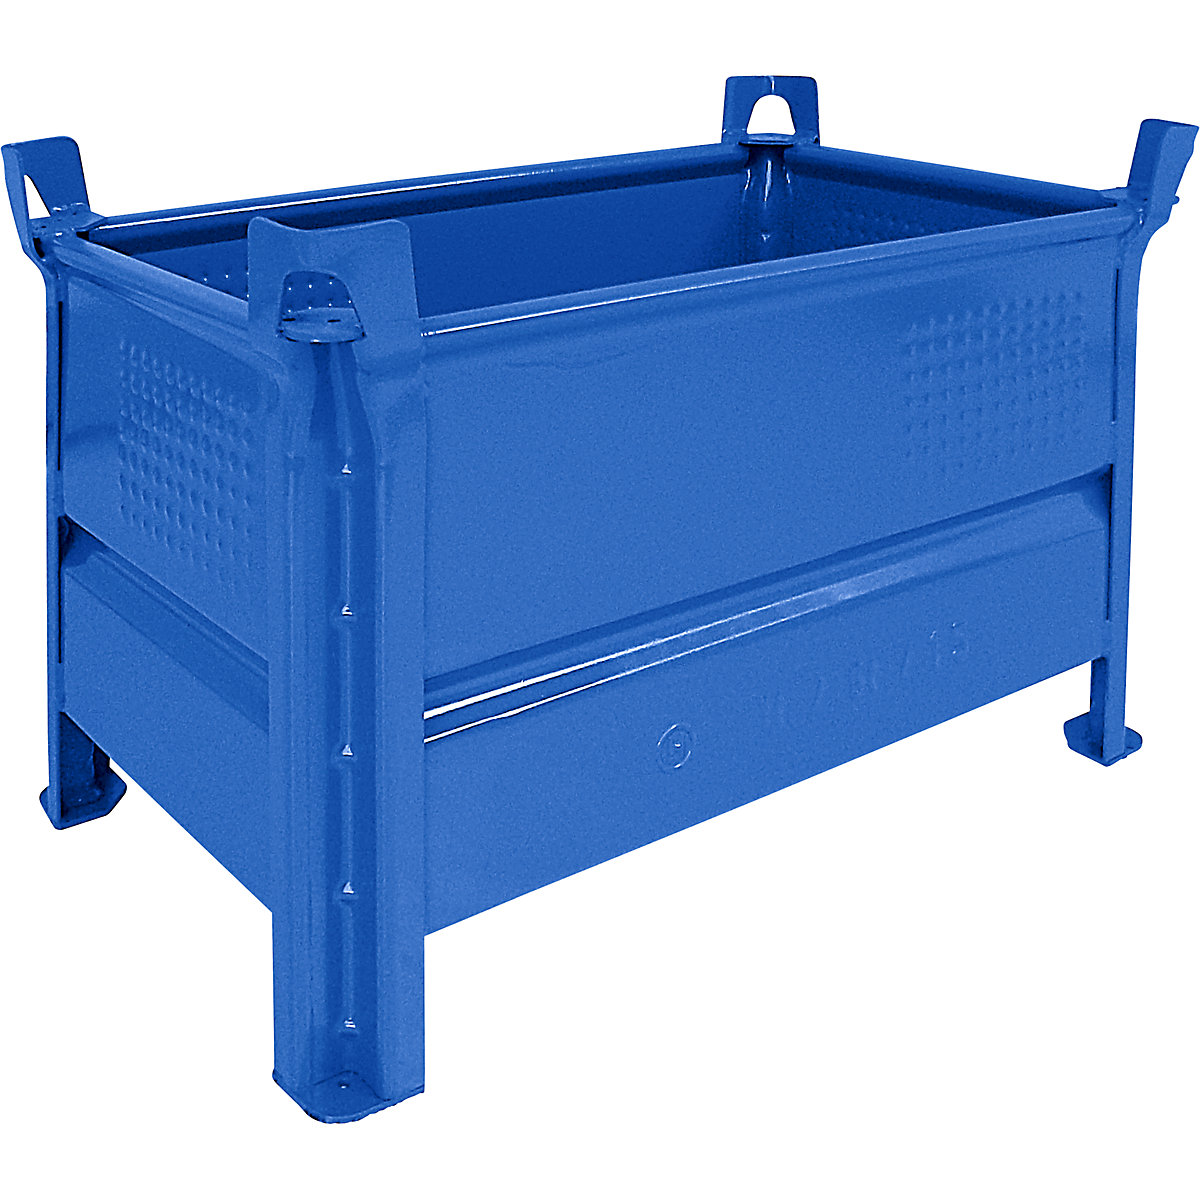 Plaatstalen stapelbak – Heson, b x l = 500 x 800 mm, draagvermogen 500 kg, blauw, vanaf 10 stuks-5